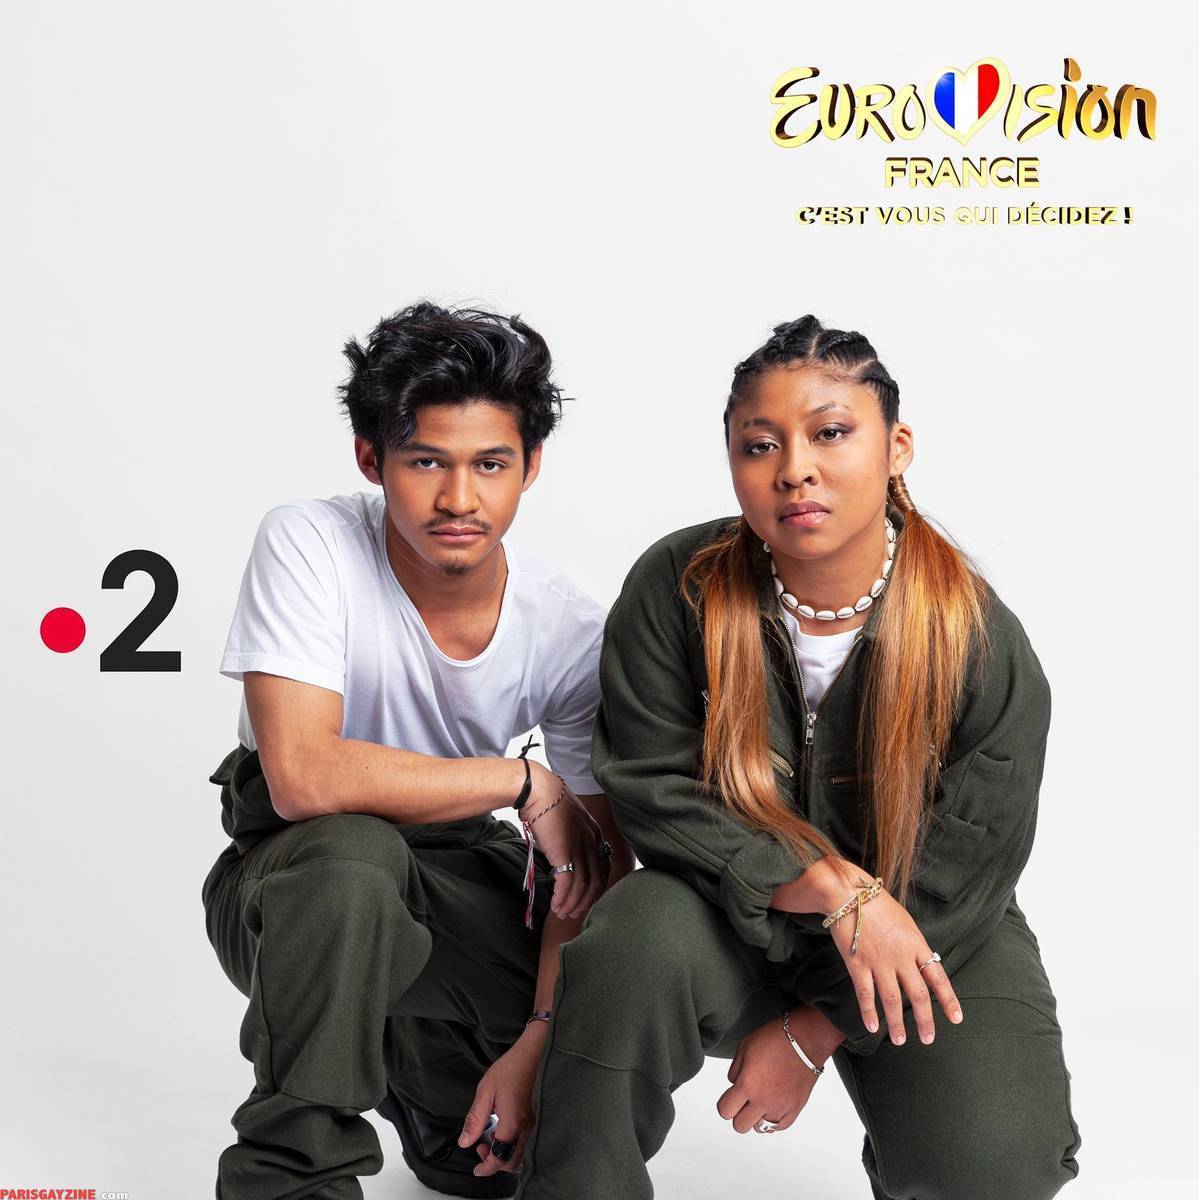 Eurovision France 2022, c'est vous qui décidez ! : Tous les candidats